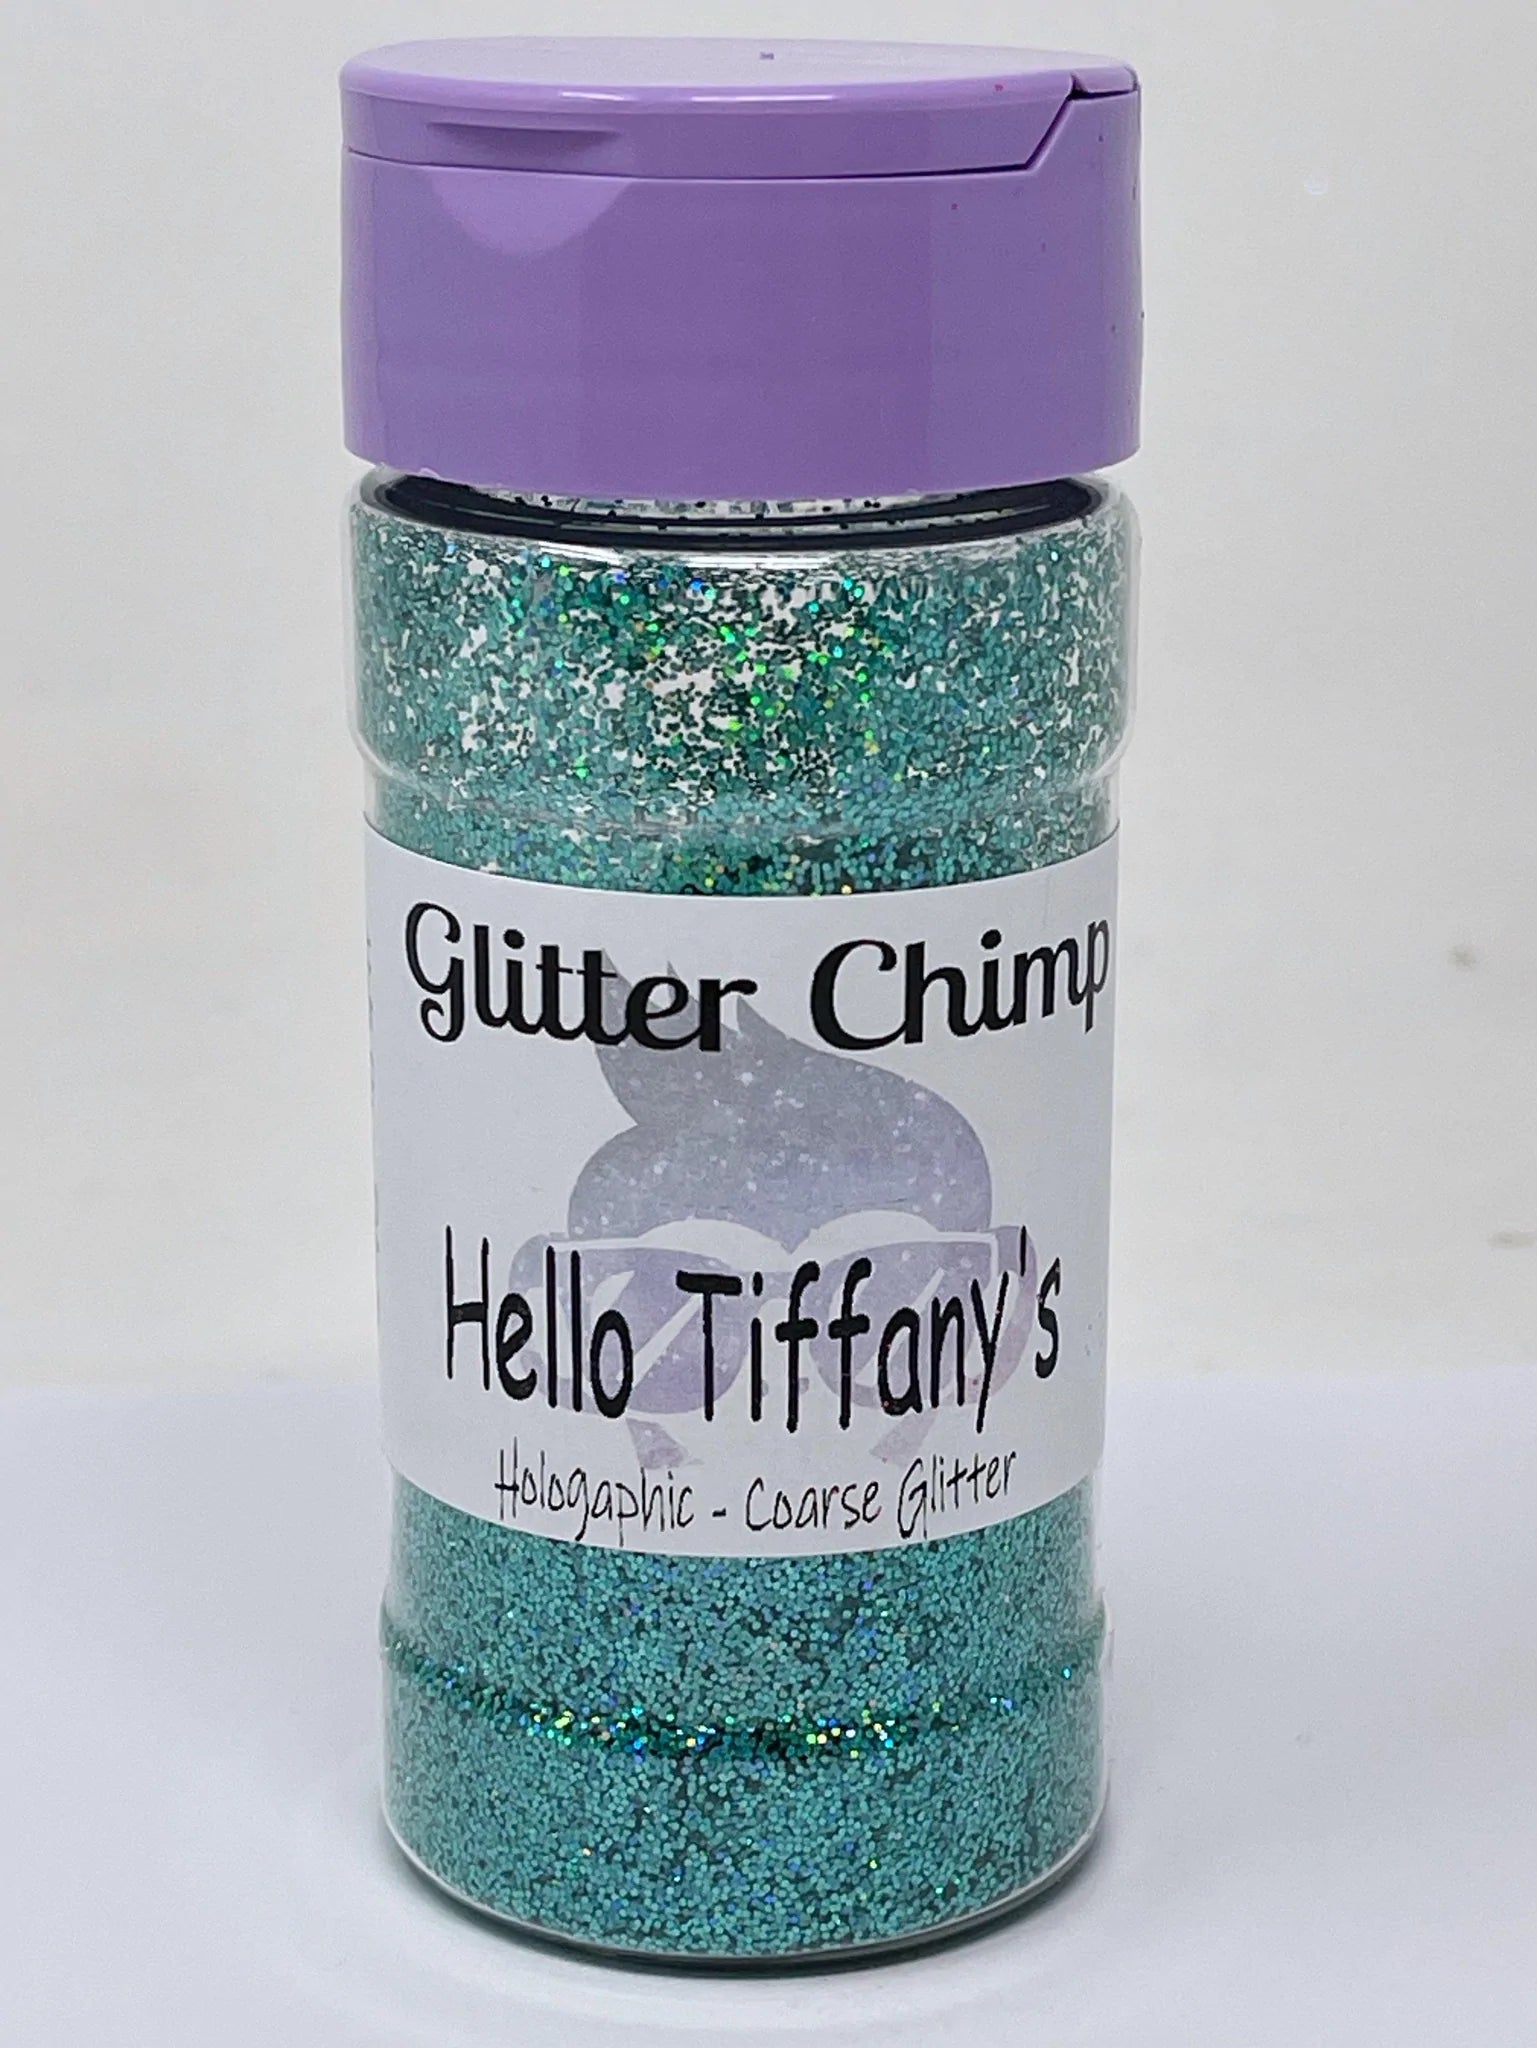 GLITTER CHIMP HELLO TIFFANY'S HOLOGRAPHIC COARSE GLITTER